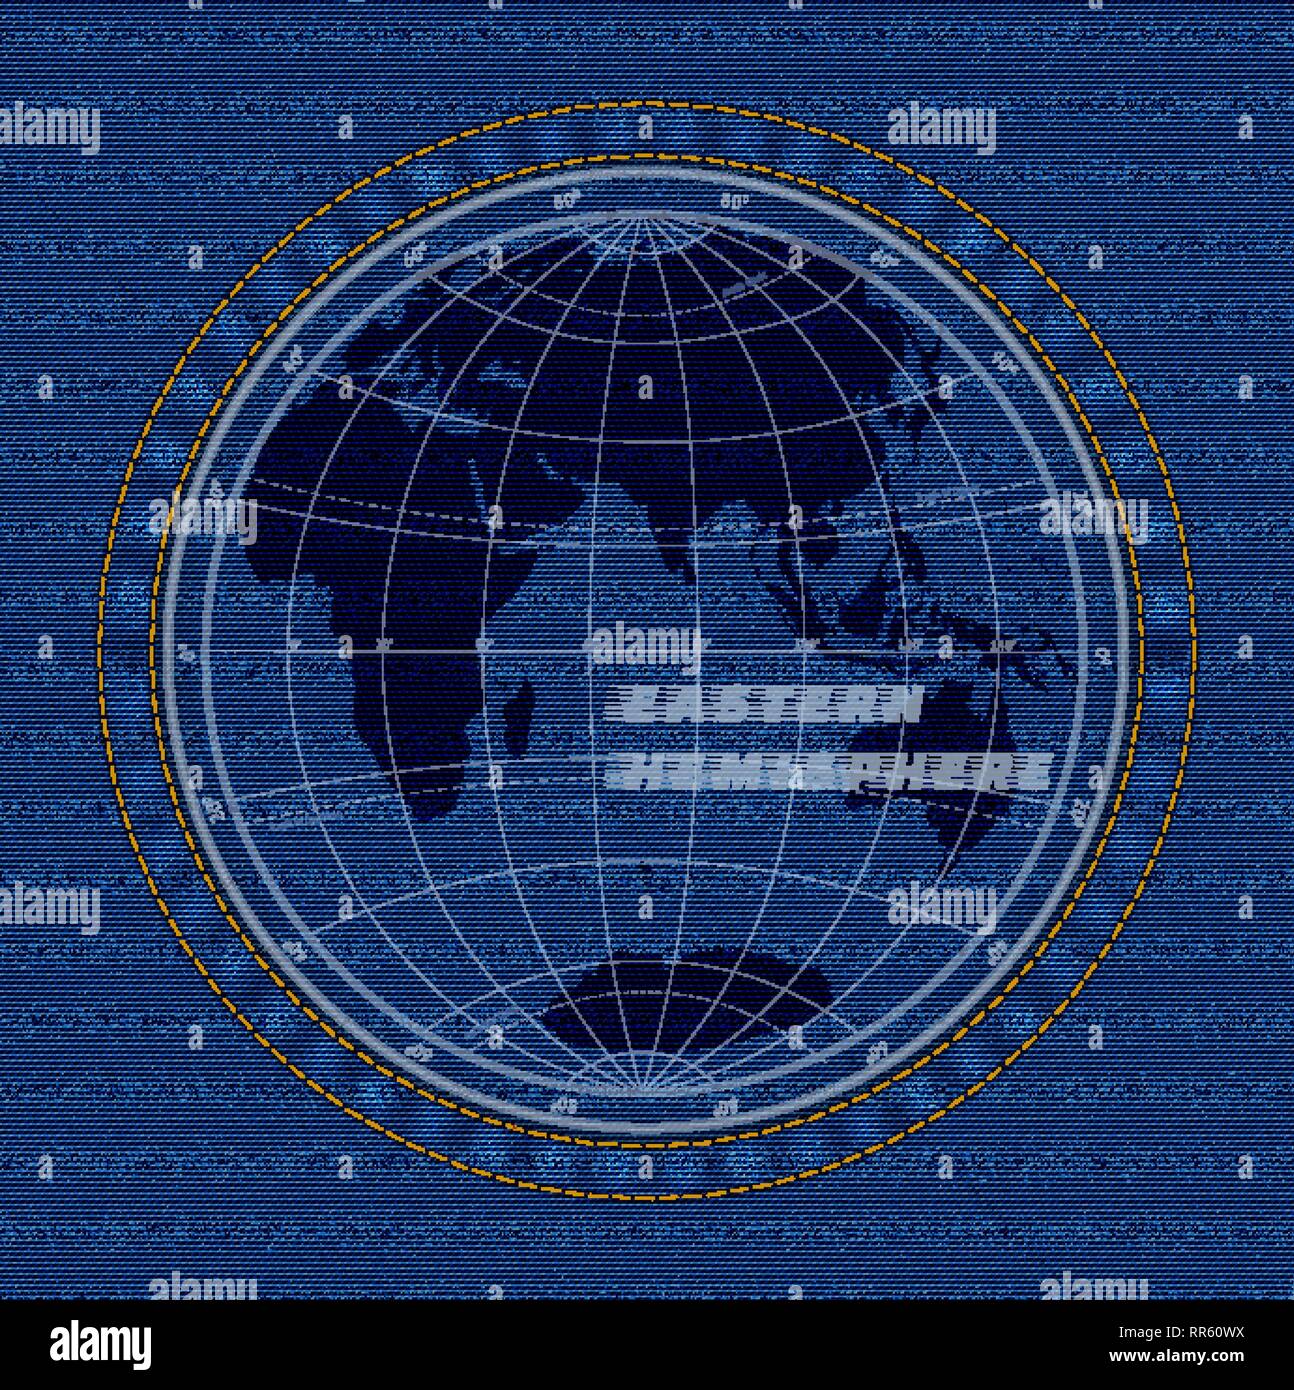 Östliche Hemisphäre Karte auf einer Jeans Textur Hintergrund Stock Vektor